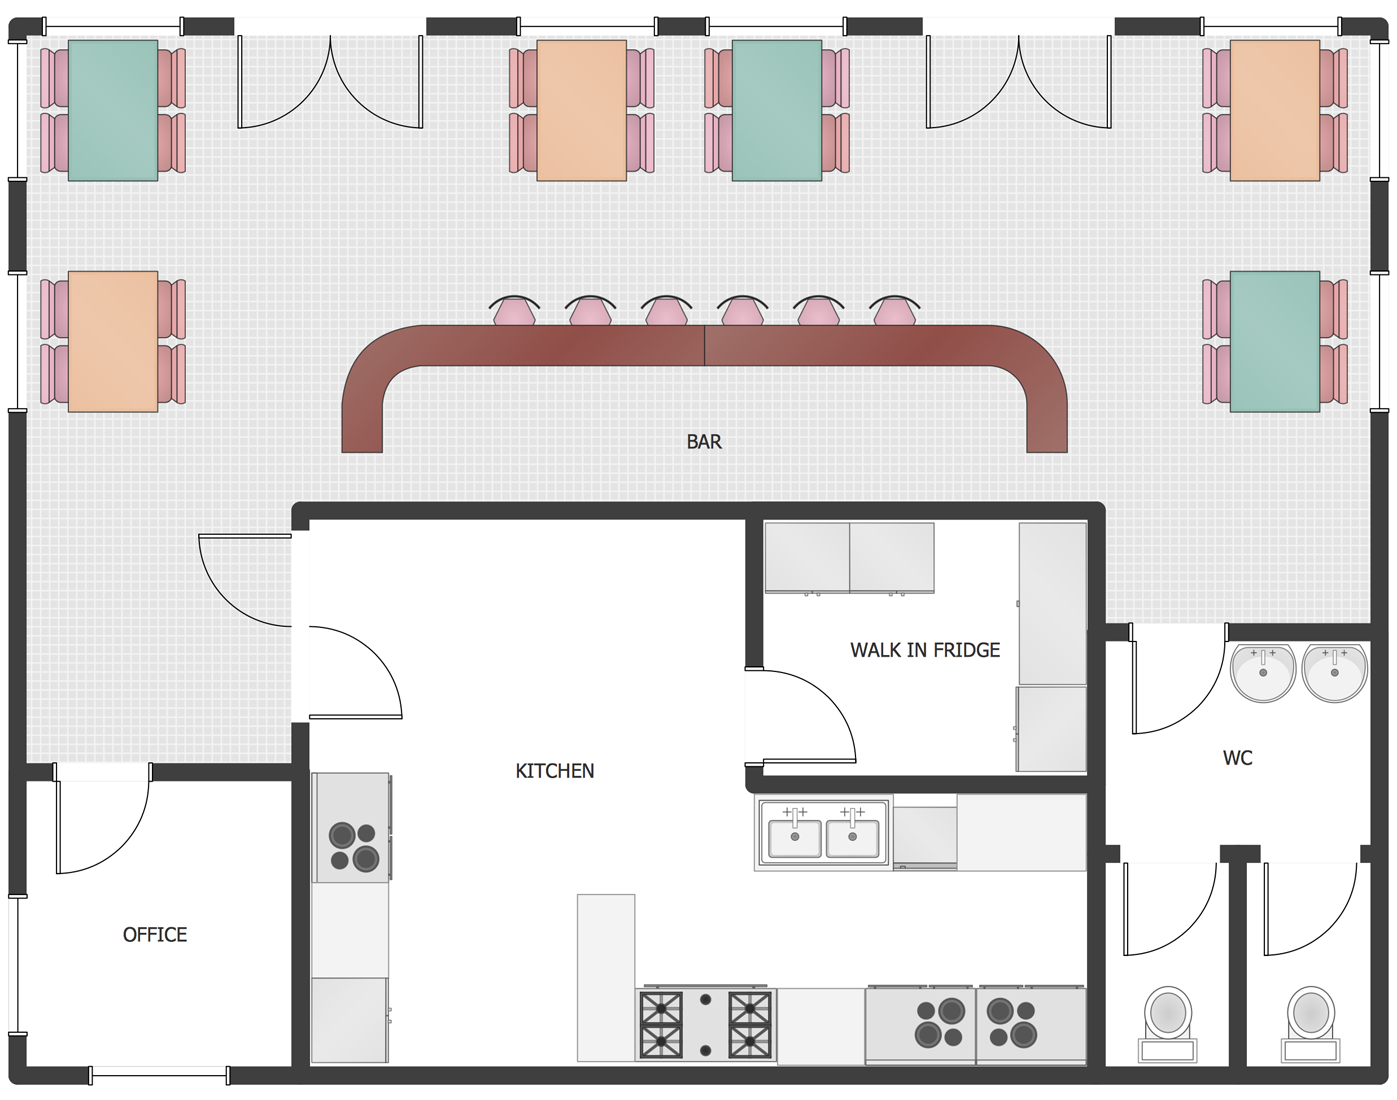 Restaurant Kitchen Floor Plan Layout - Creating a floorplan is a